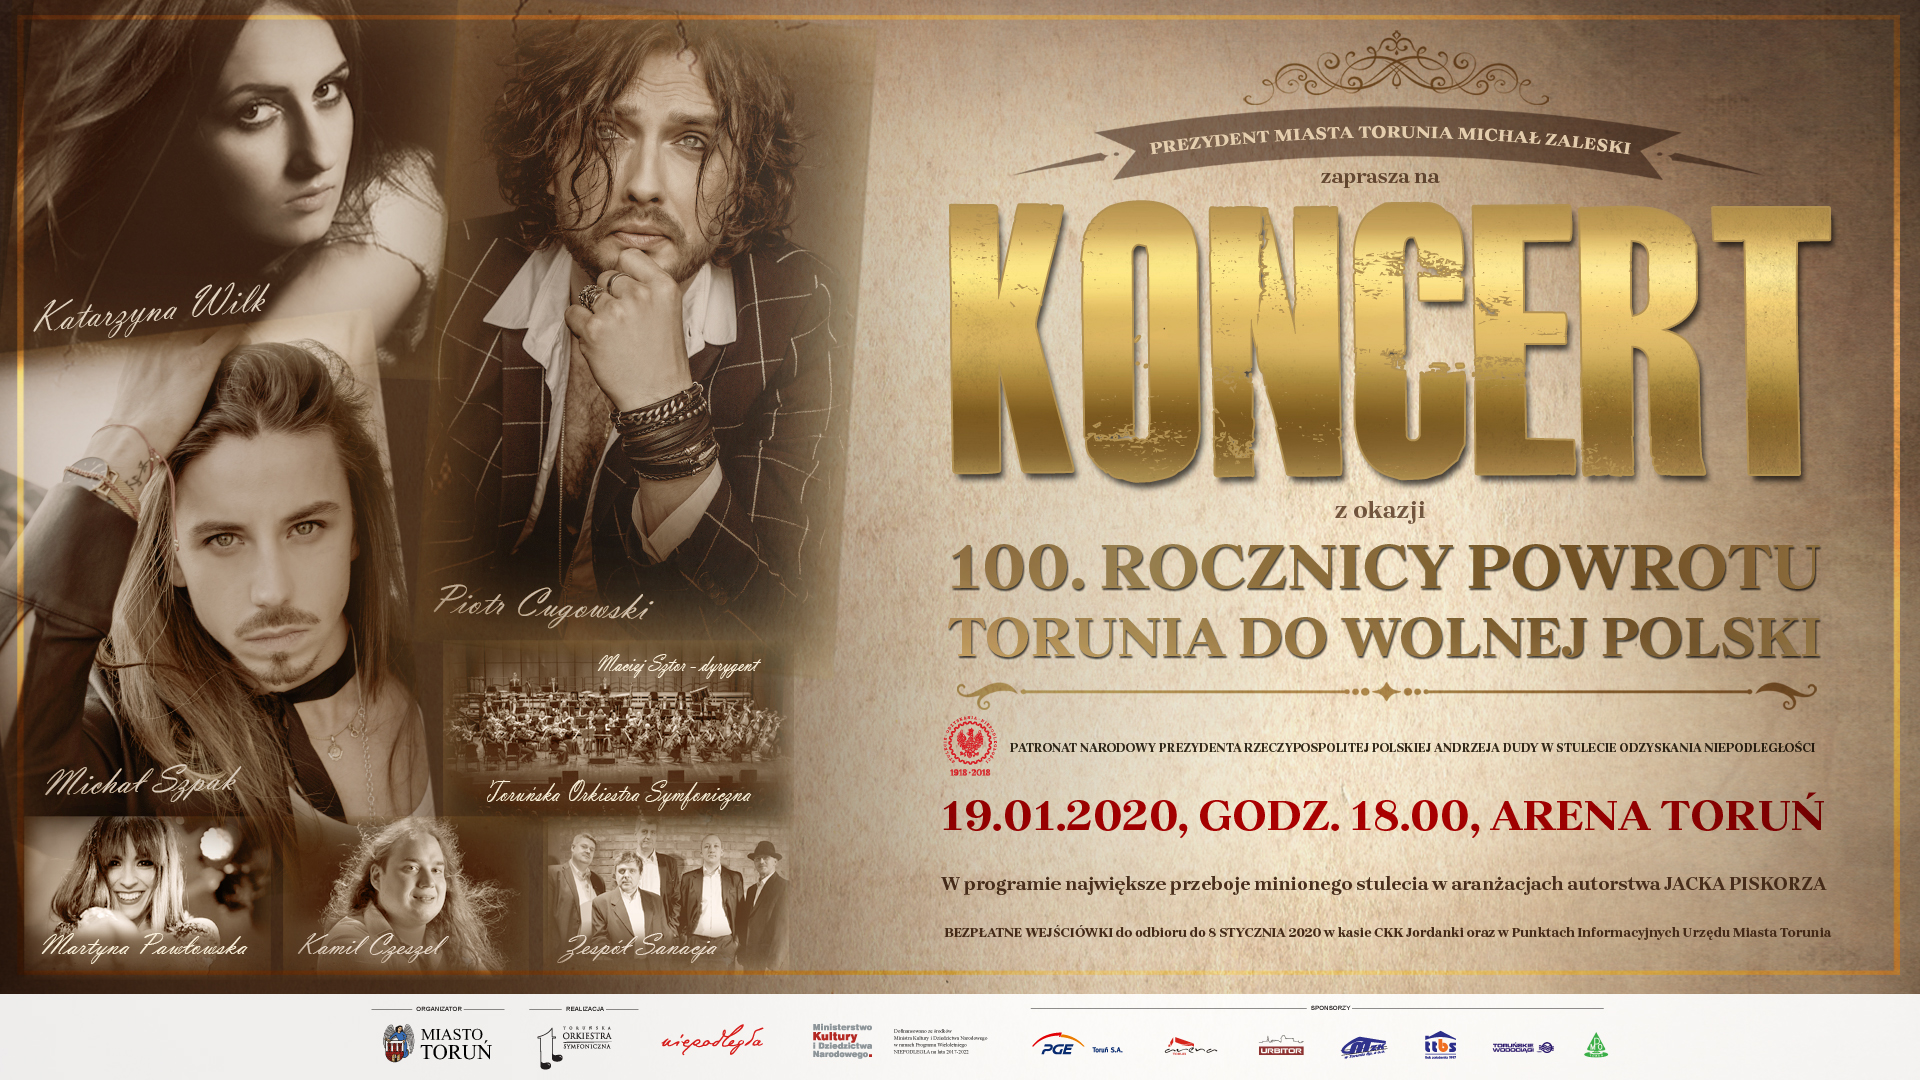 Koncert z okazji 100. rocznicy powrotu Torunia do wolnej Polski - plakat wydarzenia z informacjami o nim, zdjęciami artystów w sepii i paskiem logo